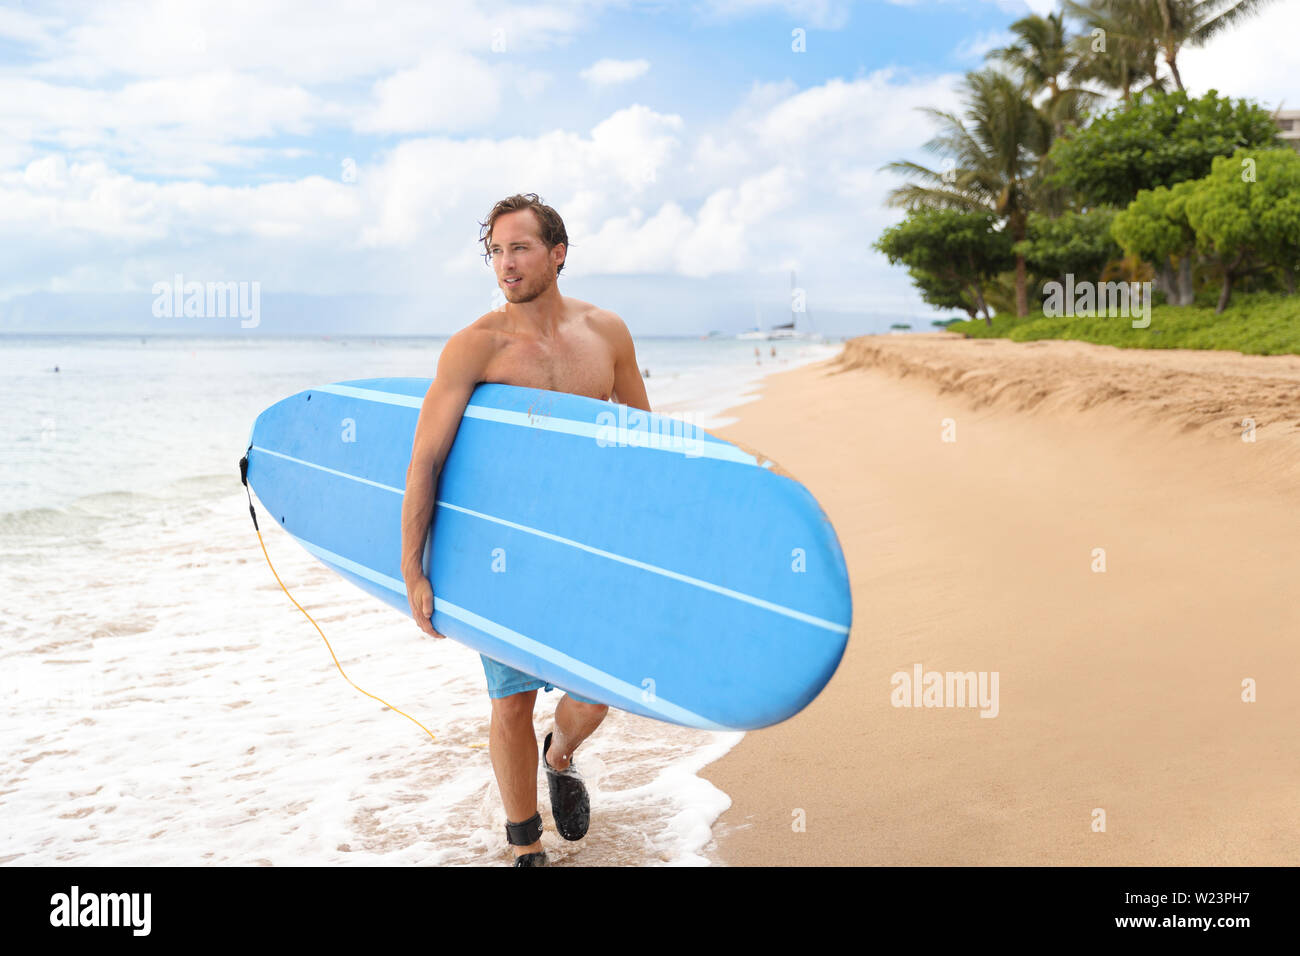 Surfer mann Surfen auf Maui Hawaii, USA. Professionelle männliche Athlet Durchführung Blue Surf Longboard gehen Für ein Surf Session am Kaanapali Beach, Hawaii Ziel. Reisen surfer Lifestyle. Stockfoto